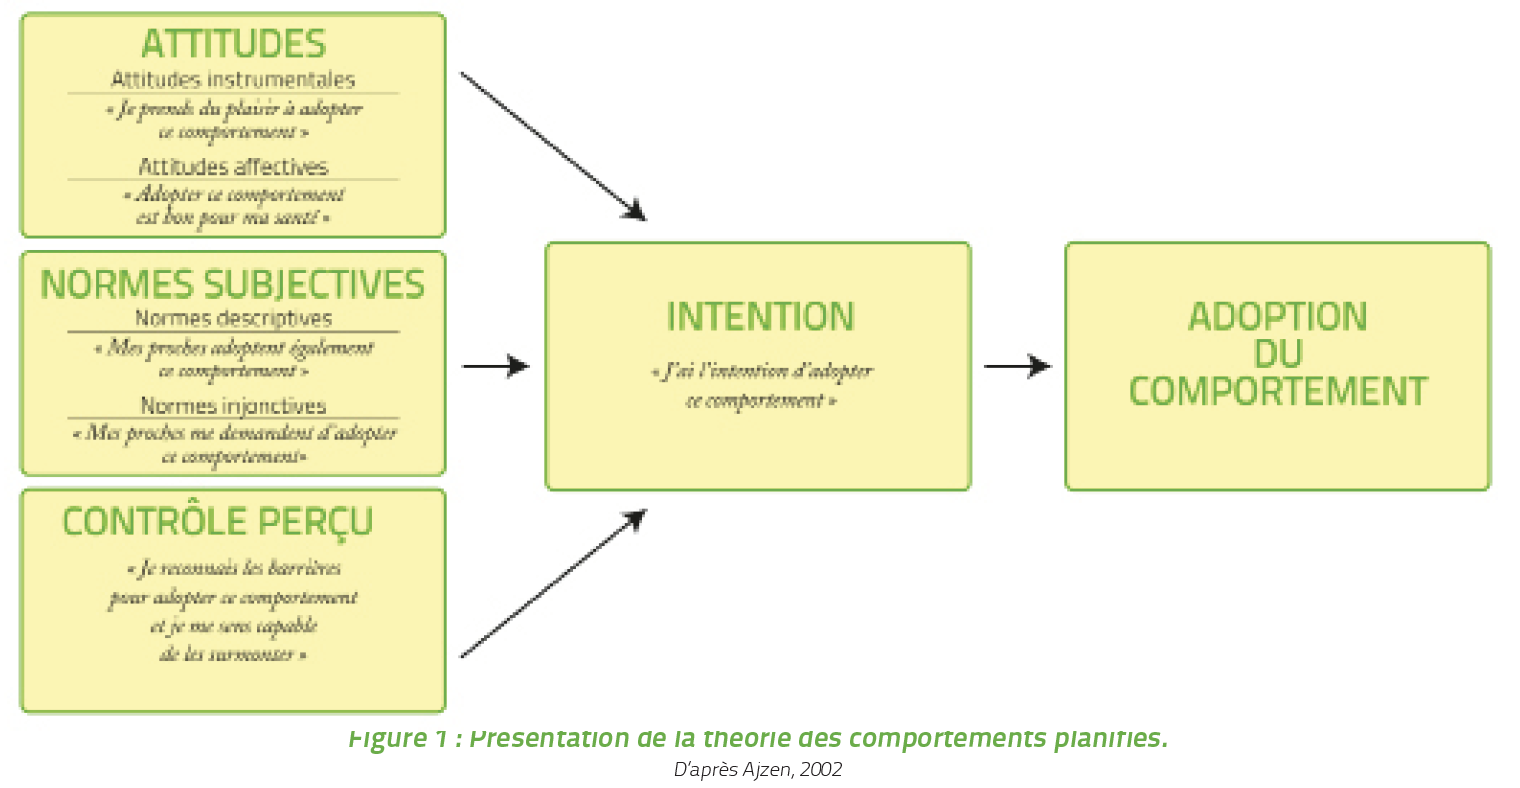 schéma de la présentation de la théorie des comportements planifiés, d’après Ajzen, 2002